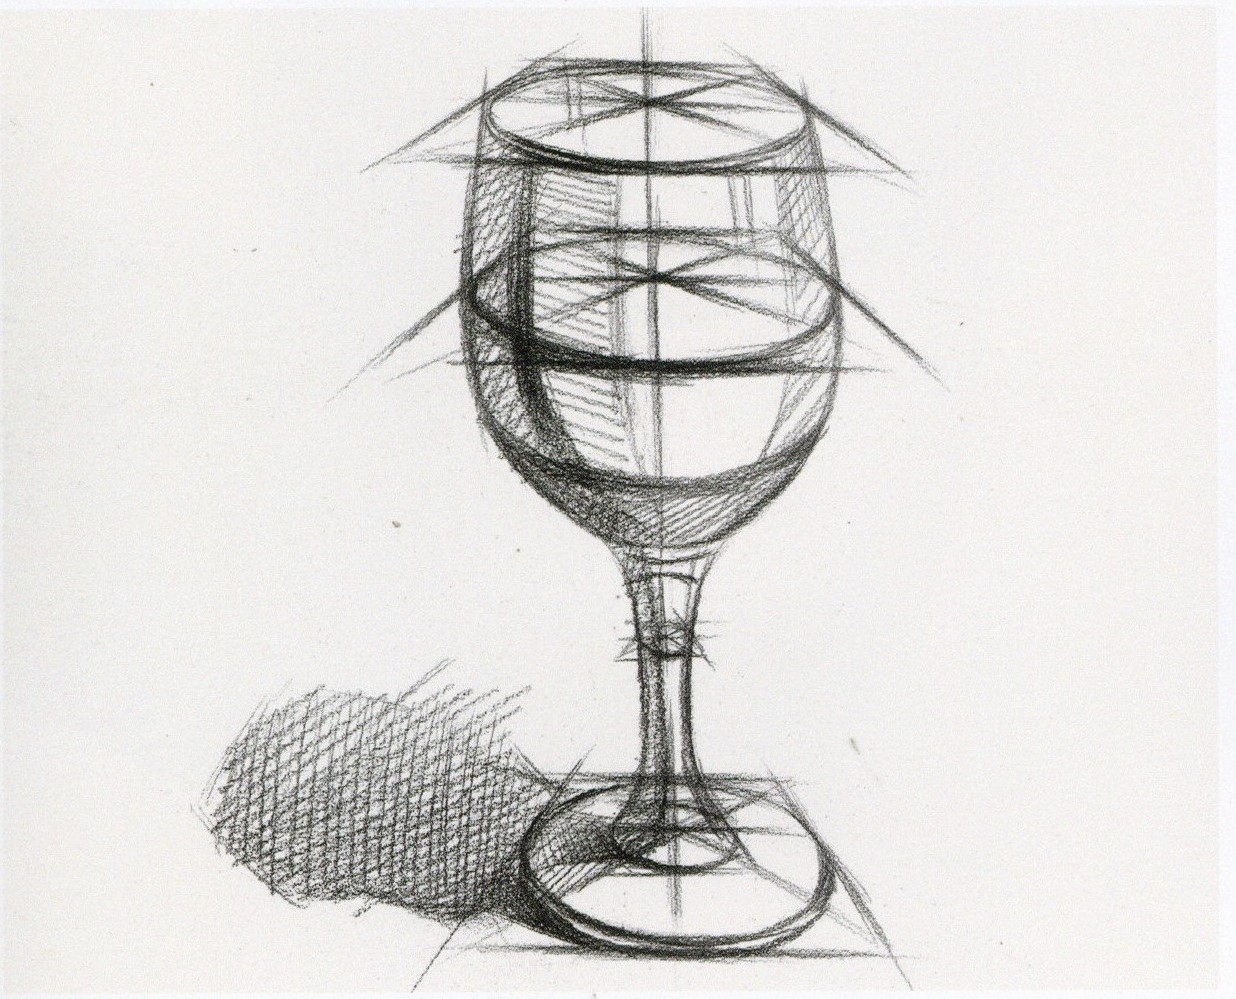 玻璃杯实物：素描高脚杯结构步骤教程